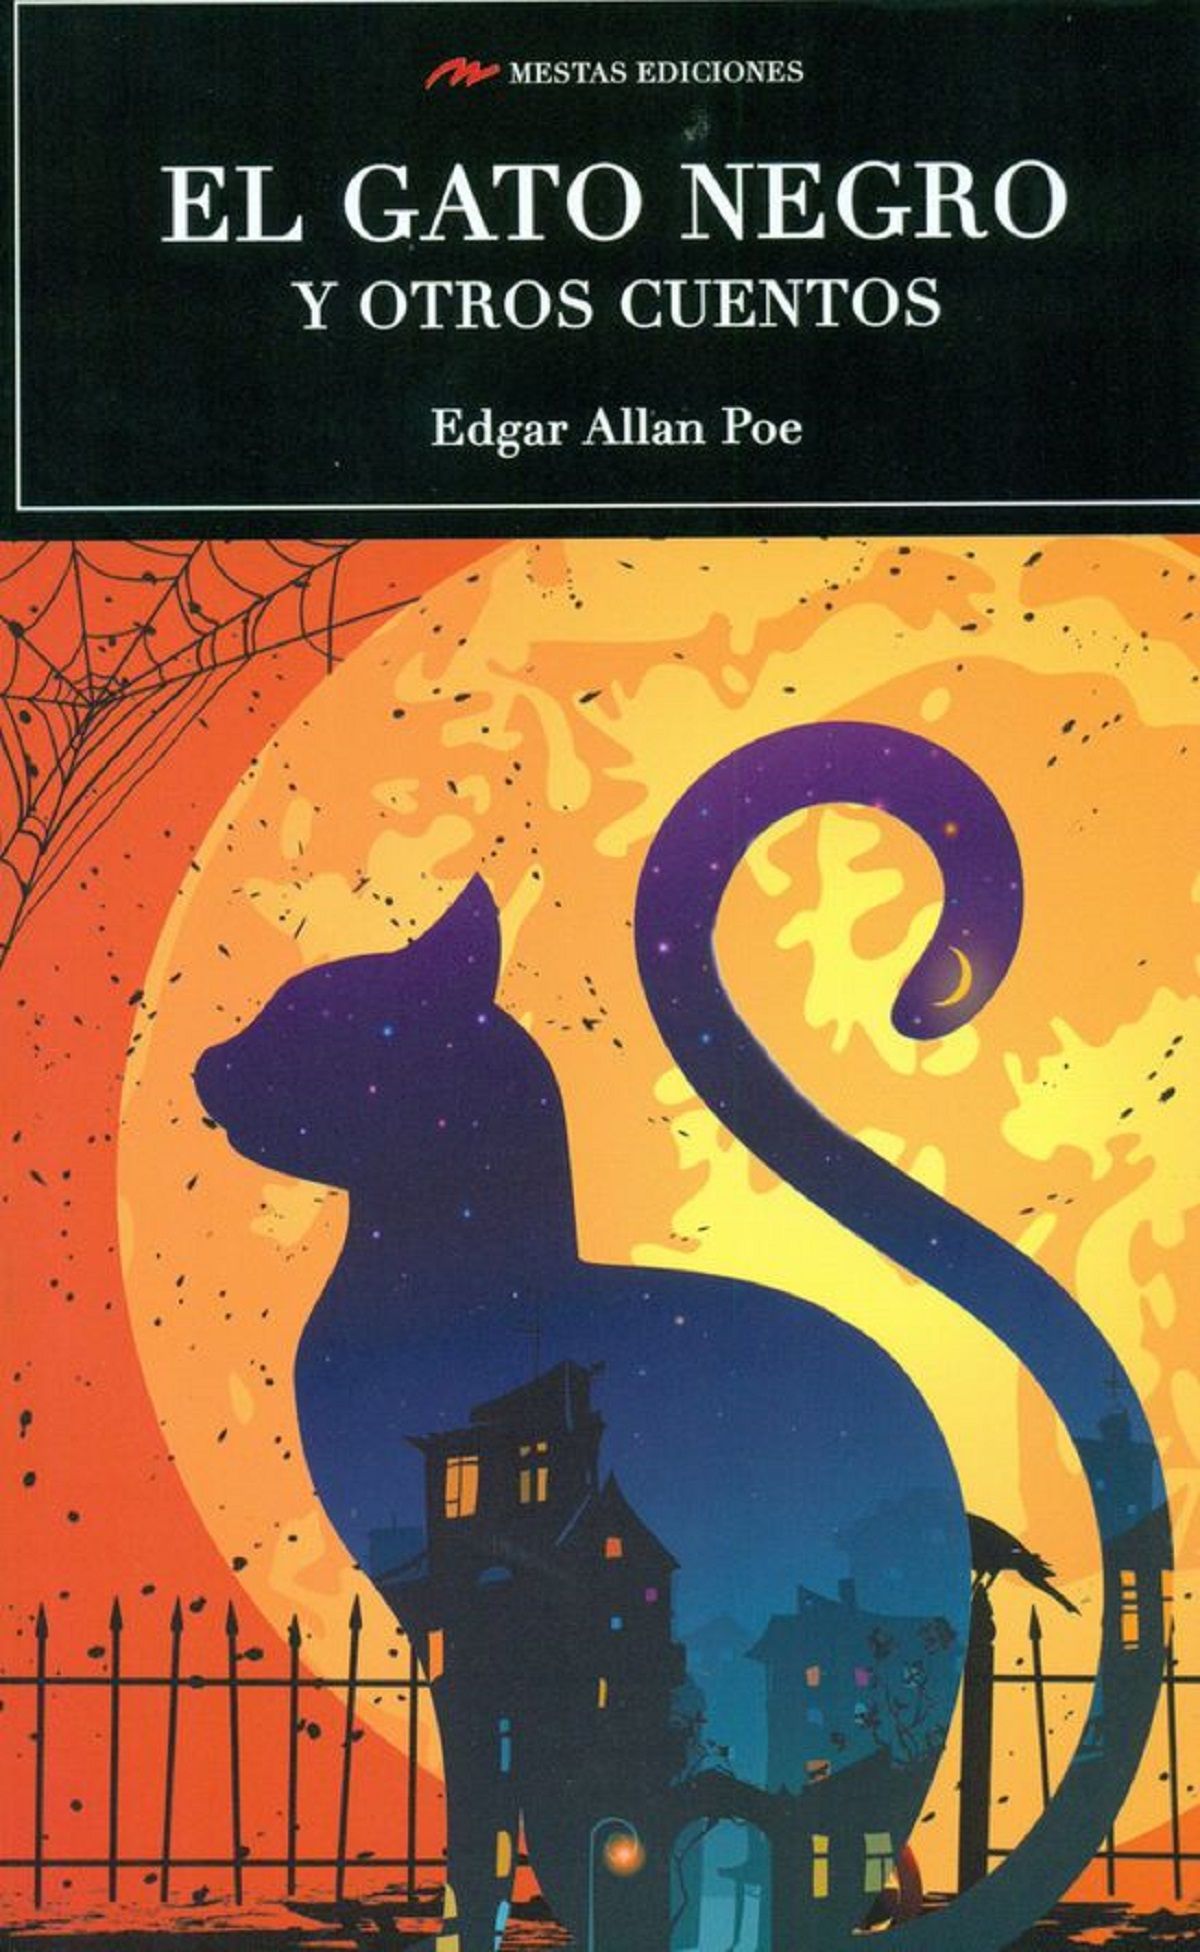 Portada de &#039;El gato negro y otros cuentos&#039;, de Edgar Allan Poe.